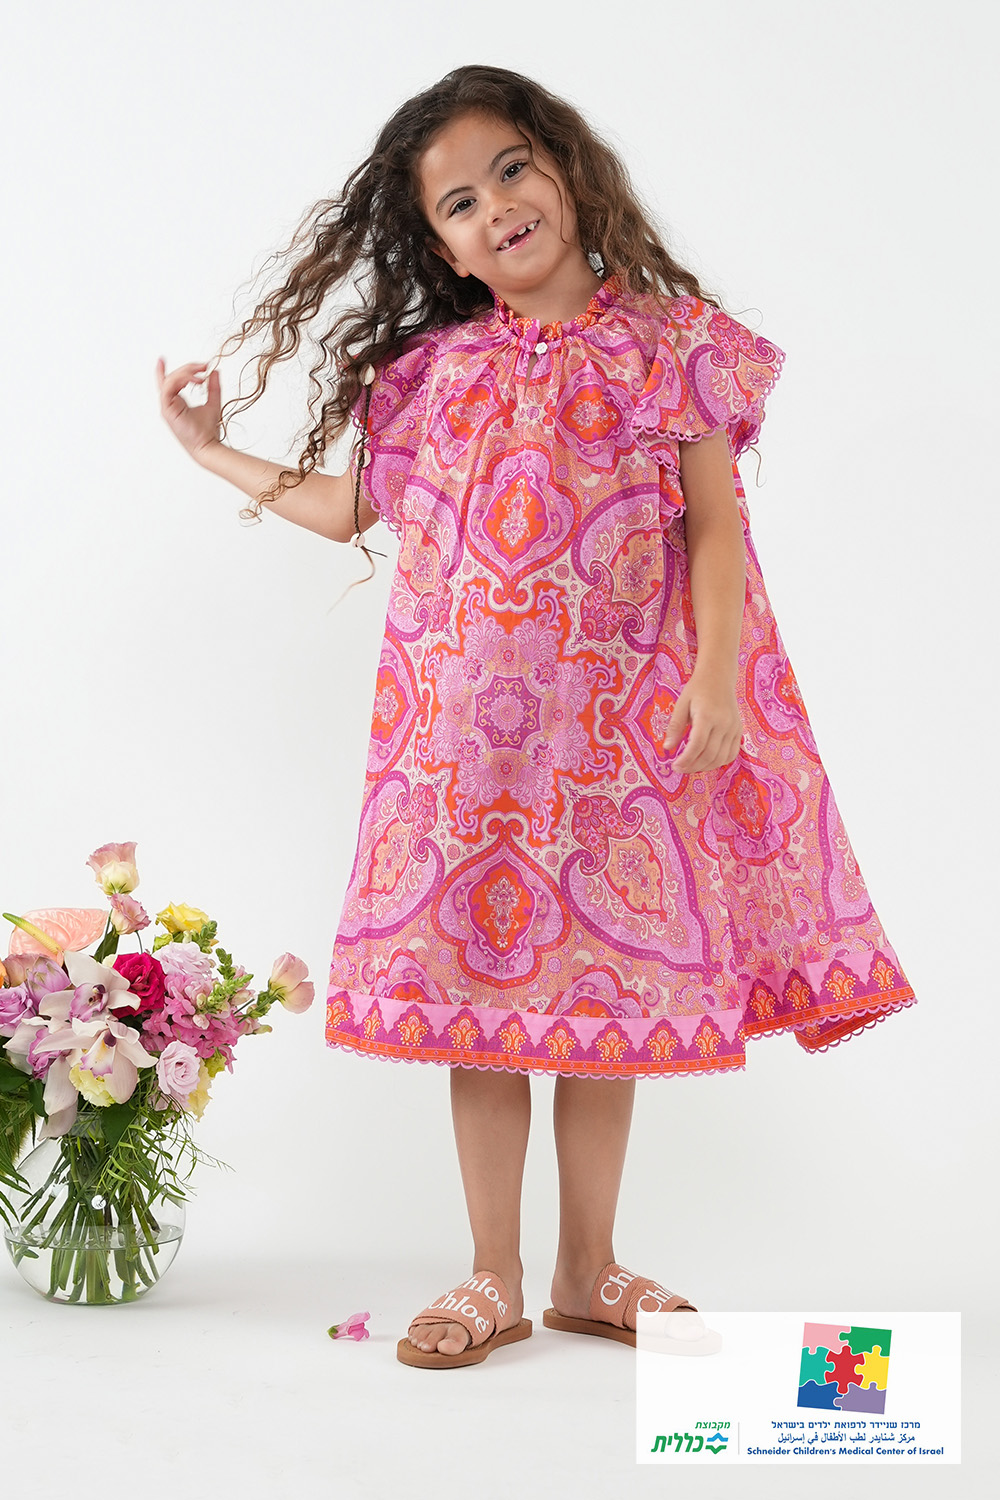 שמלה פרחונית - גילאי 1-10 שנים ZIMMERMANN KIDS